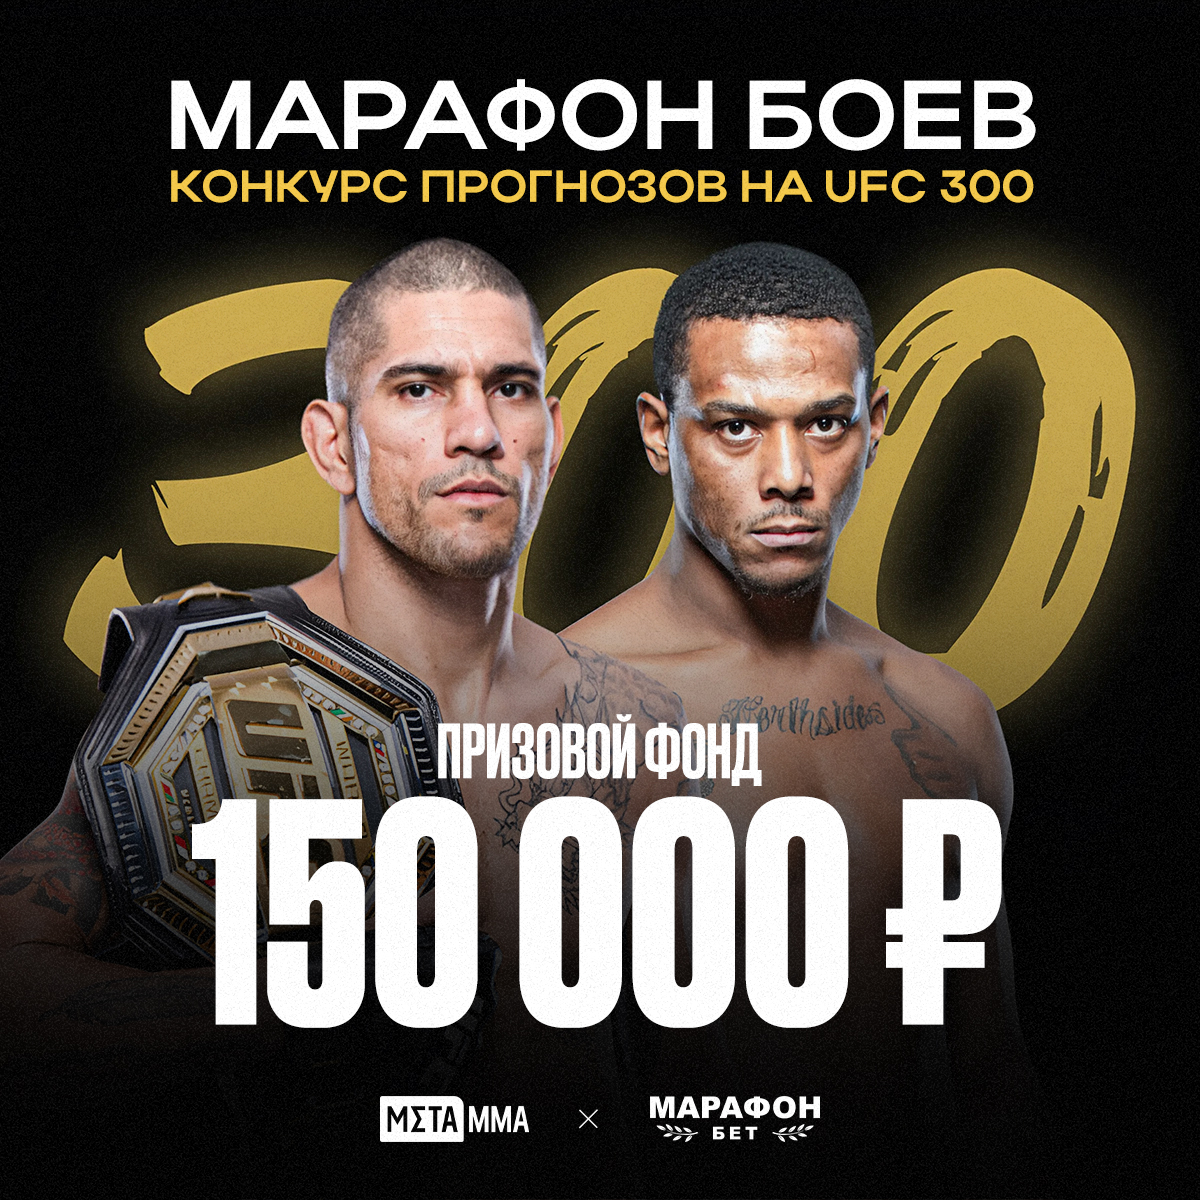 Бесплатный конкурс-прогноз на UFC 300